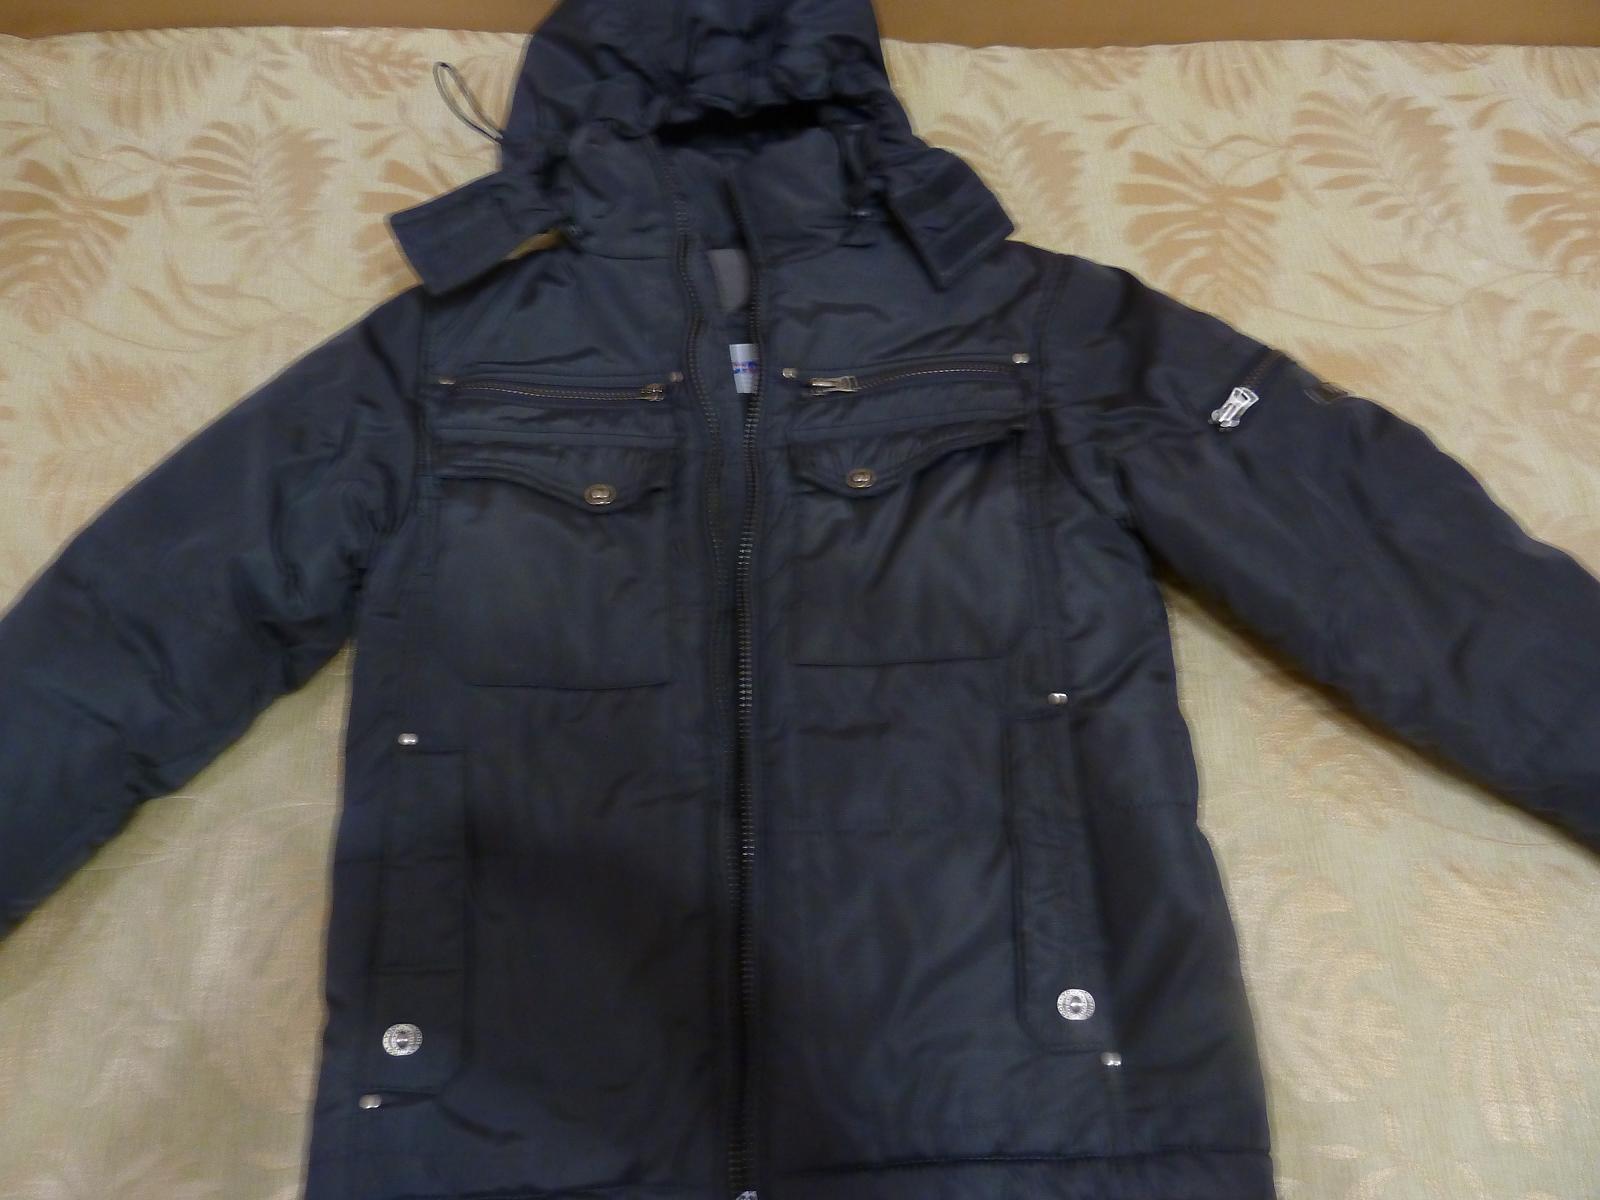 Барахолка Саранск зимняя куртка на мальчика 146 252. Авито Ульяновск продам куртку зима для мальчика 134р. Куртка для мальчика 146